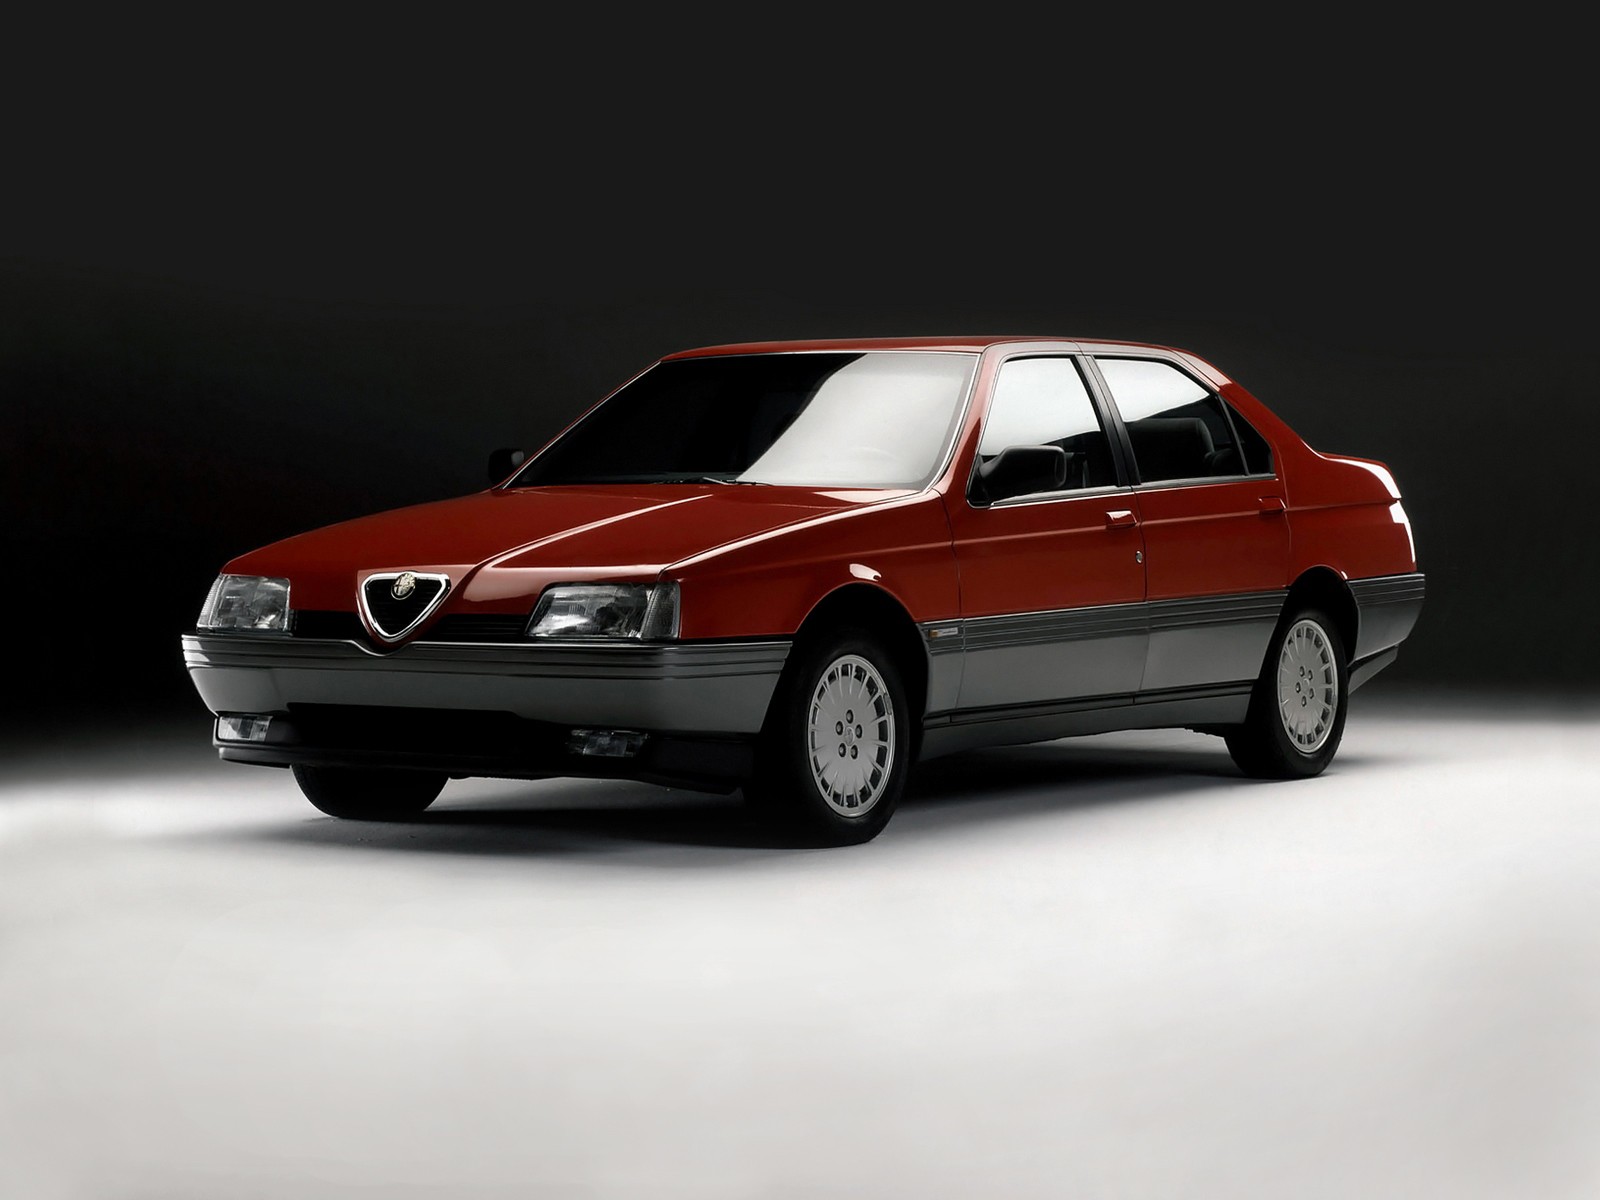 Alfa Romeo 164 - tsara tarehy amin'ny lafiny maro